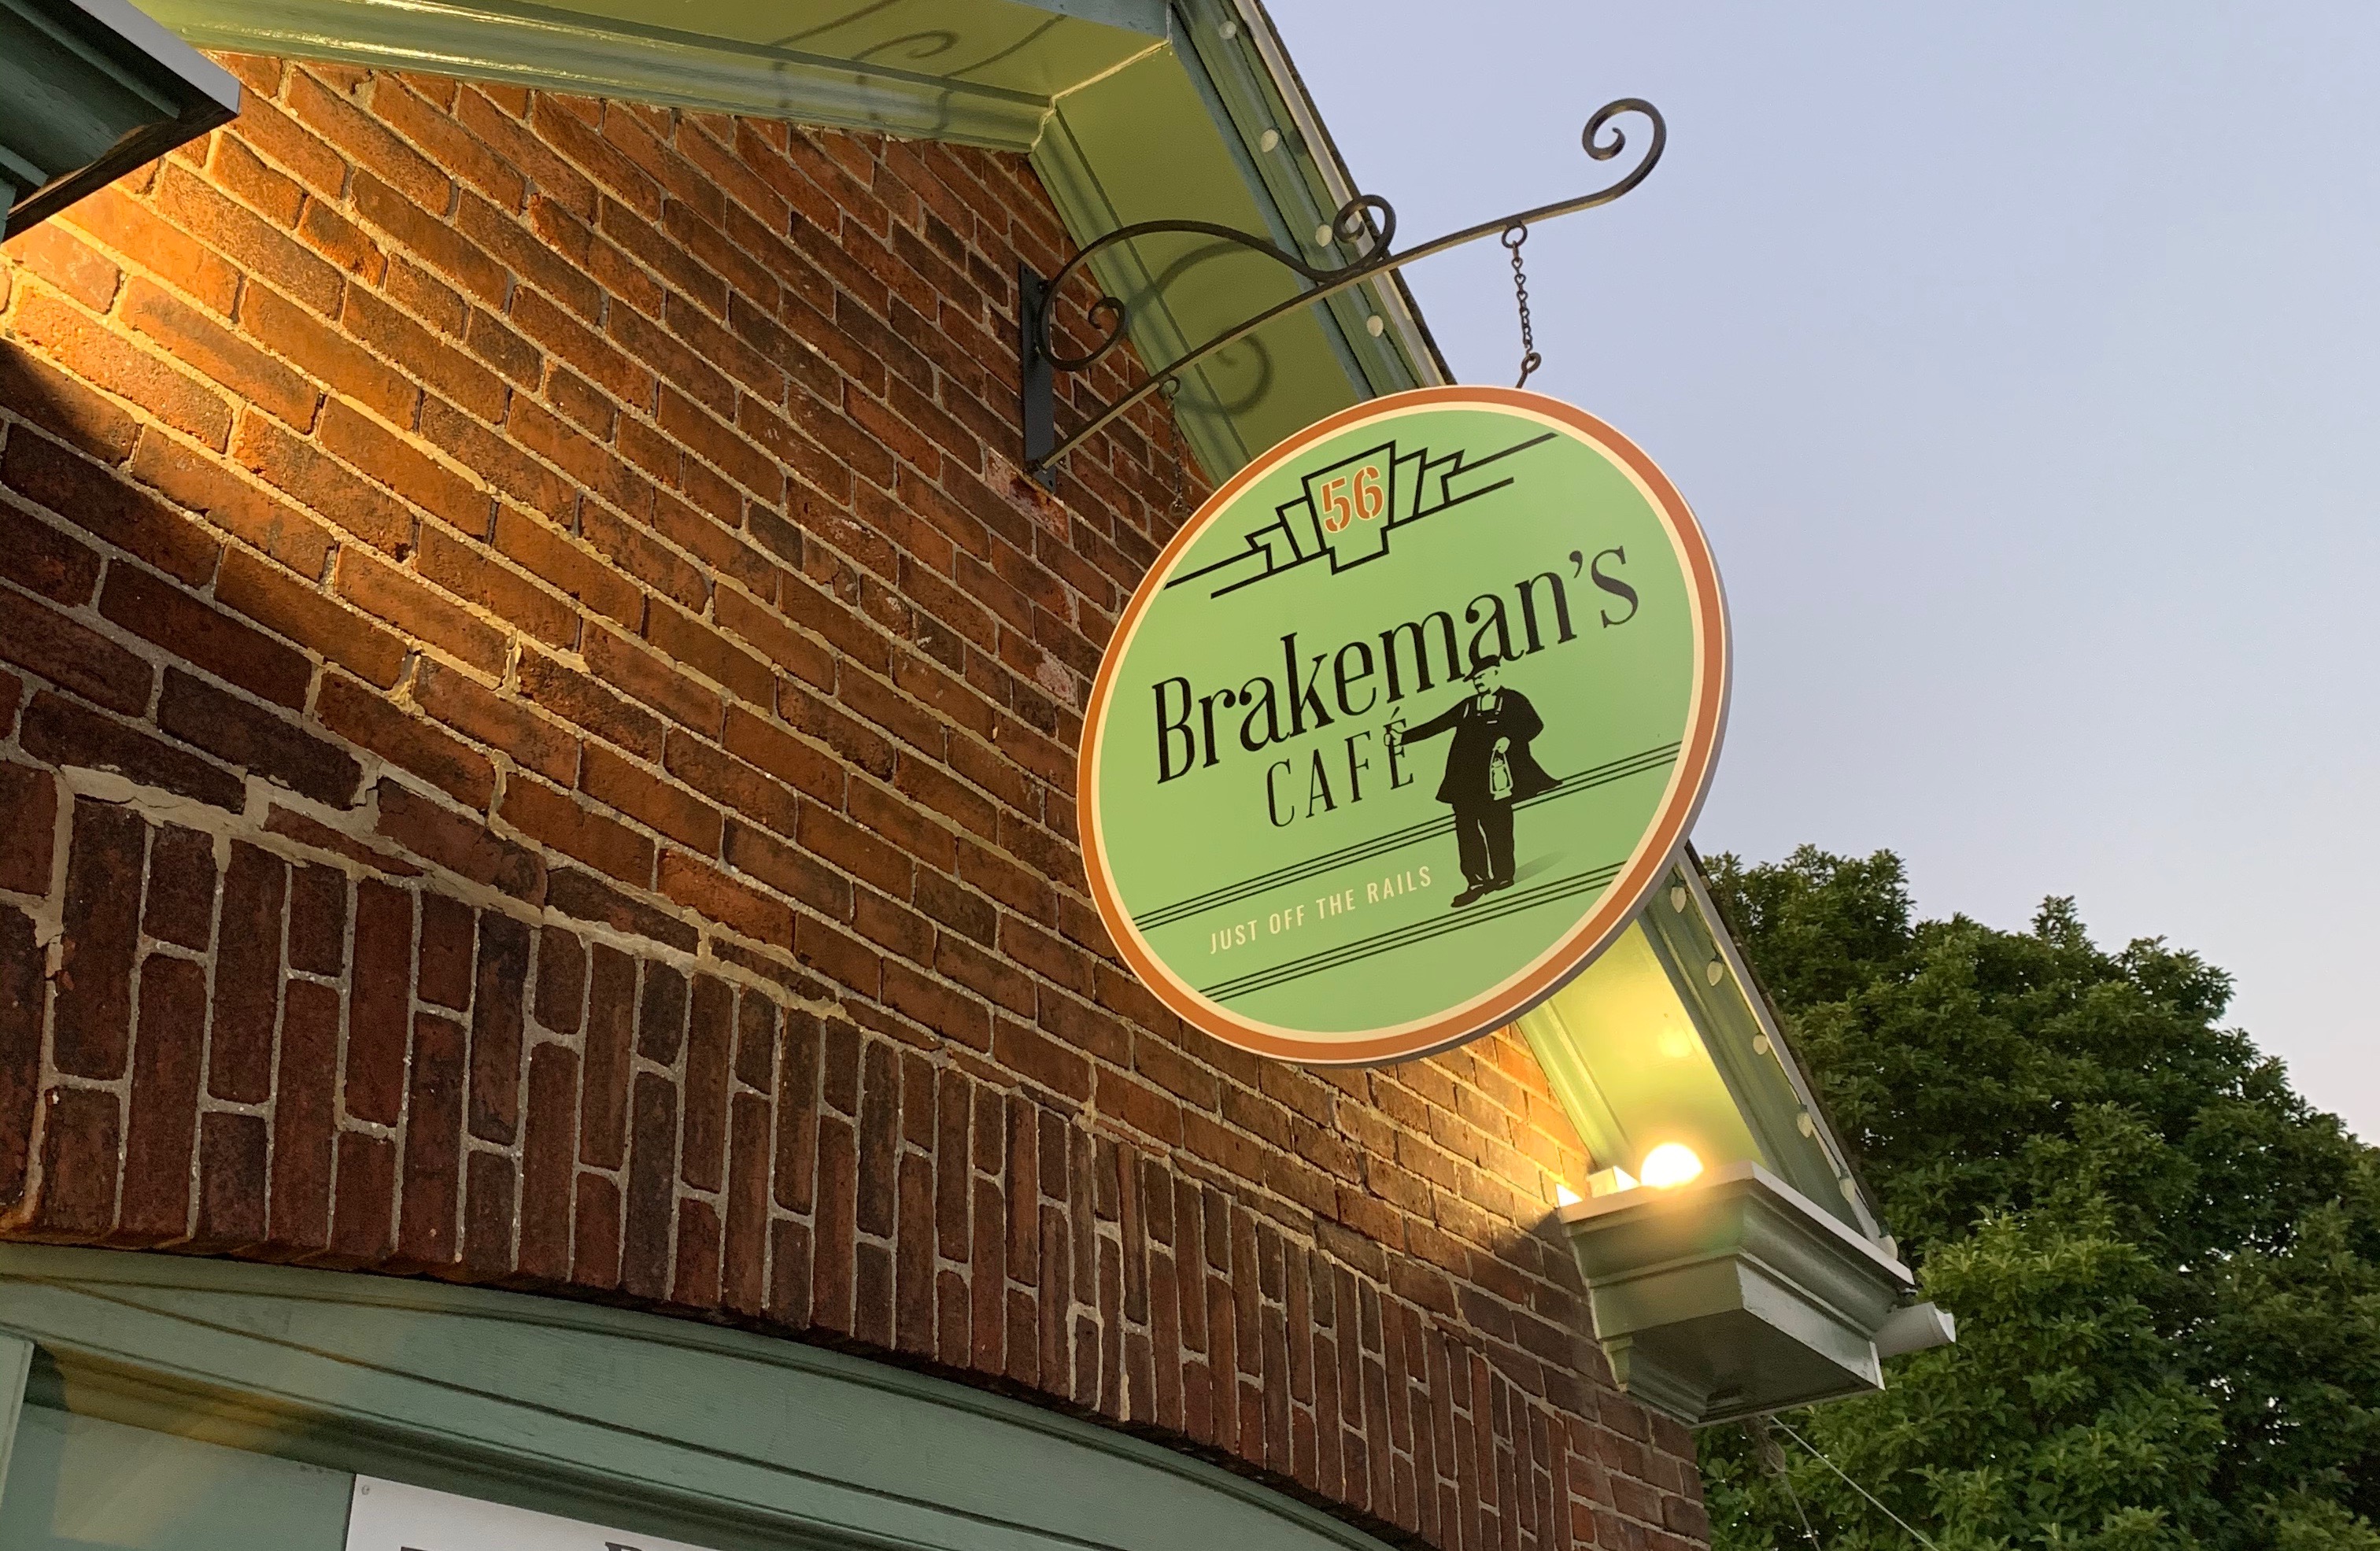 Brakeman's Cafe